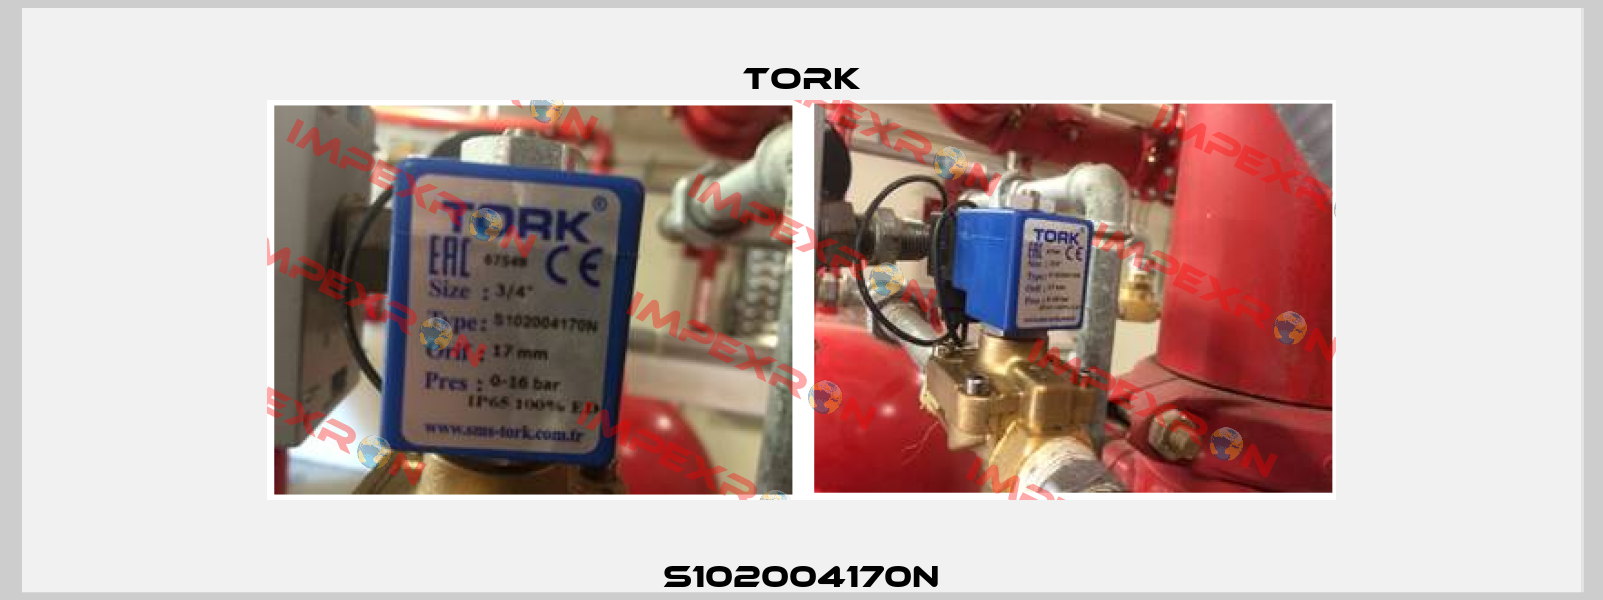 S102004170N Tork